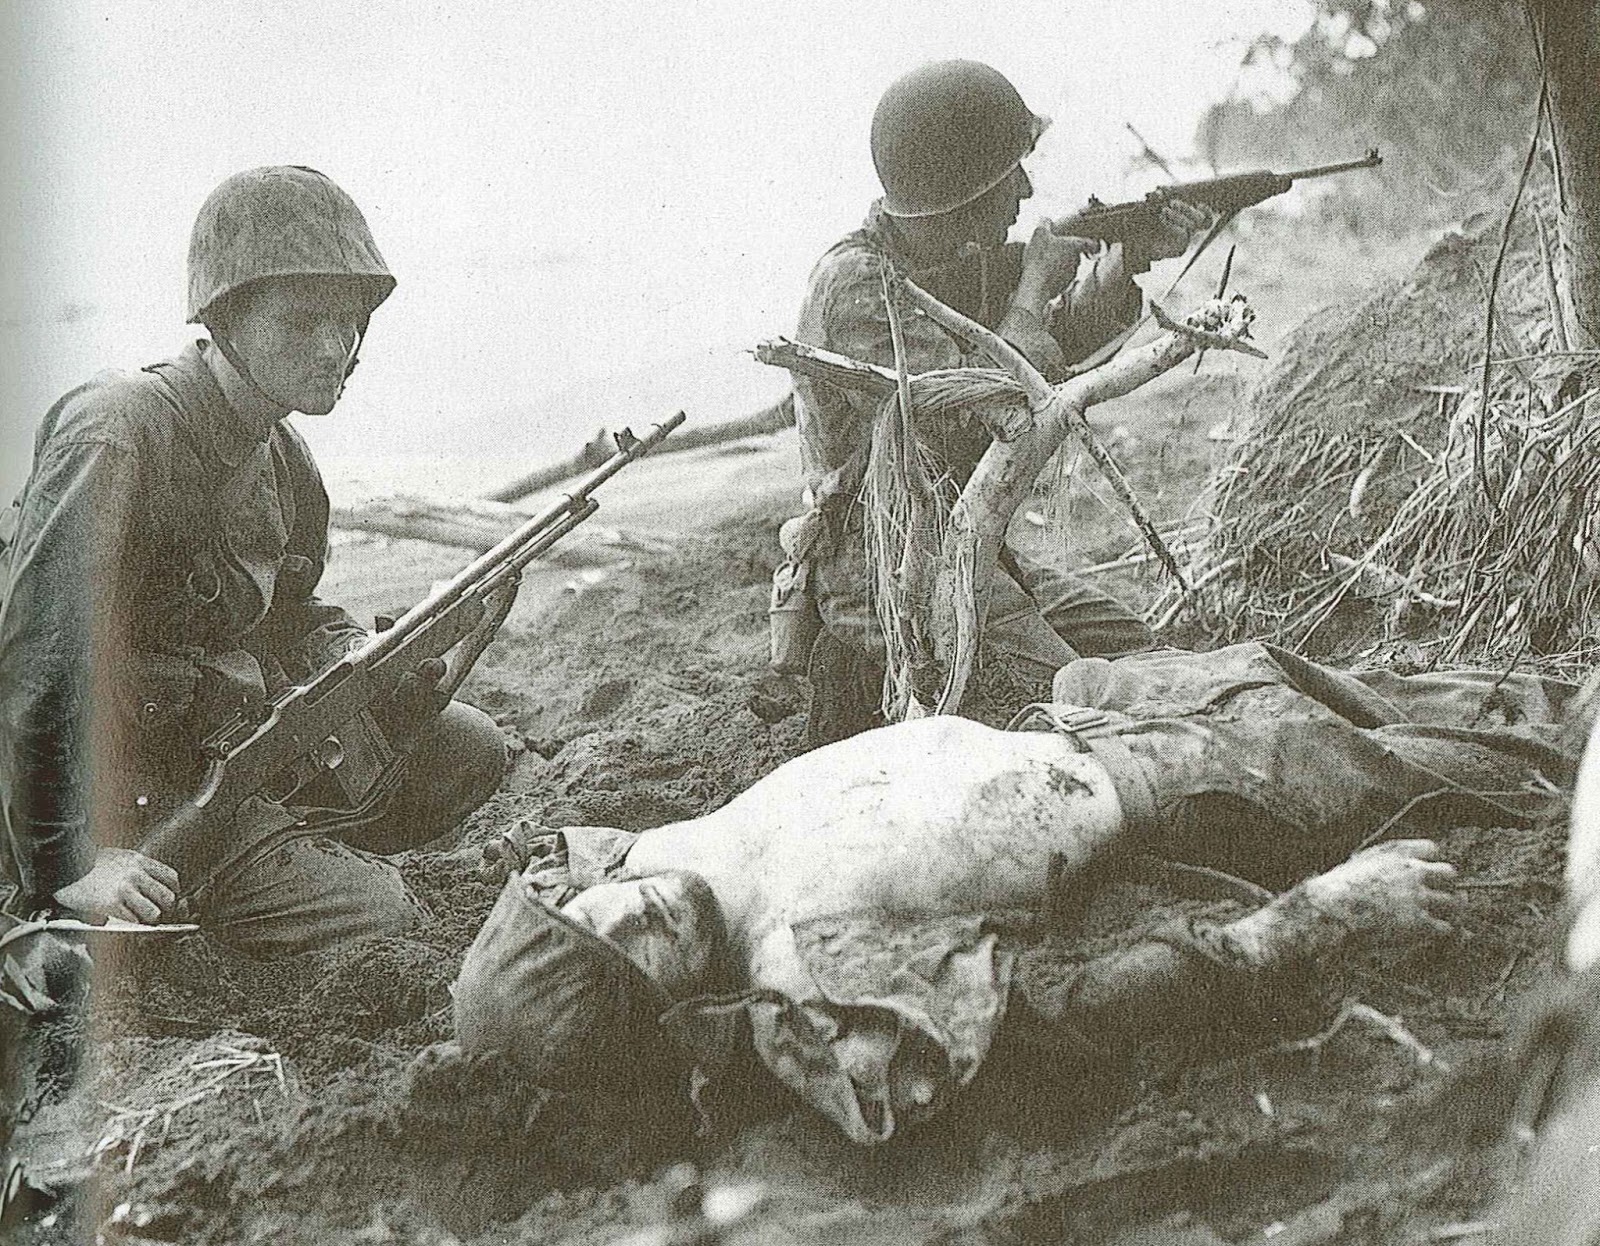 Japan No War Jnw 日本平和の市民連盟 ガダルカナル島 の山腹には 多数の日本兵の死体だけでなく 海兵隊のも散在して血染めの高地となった